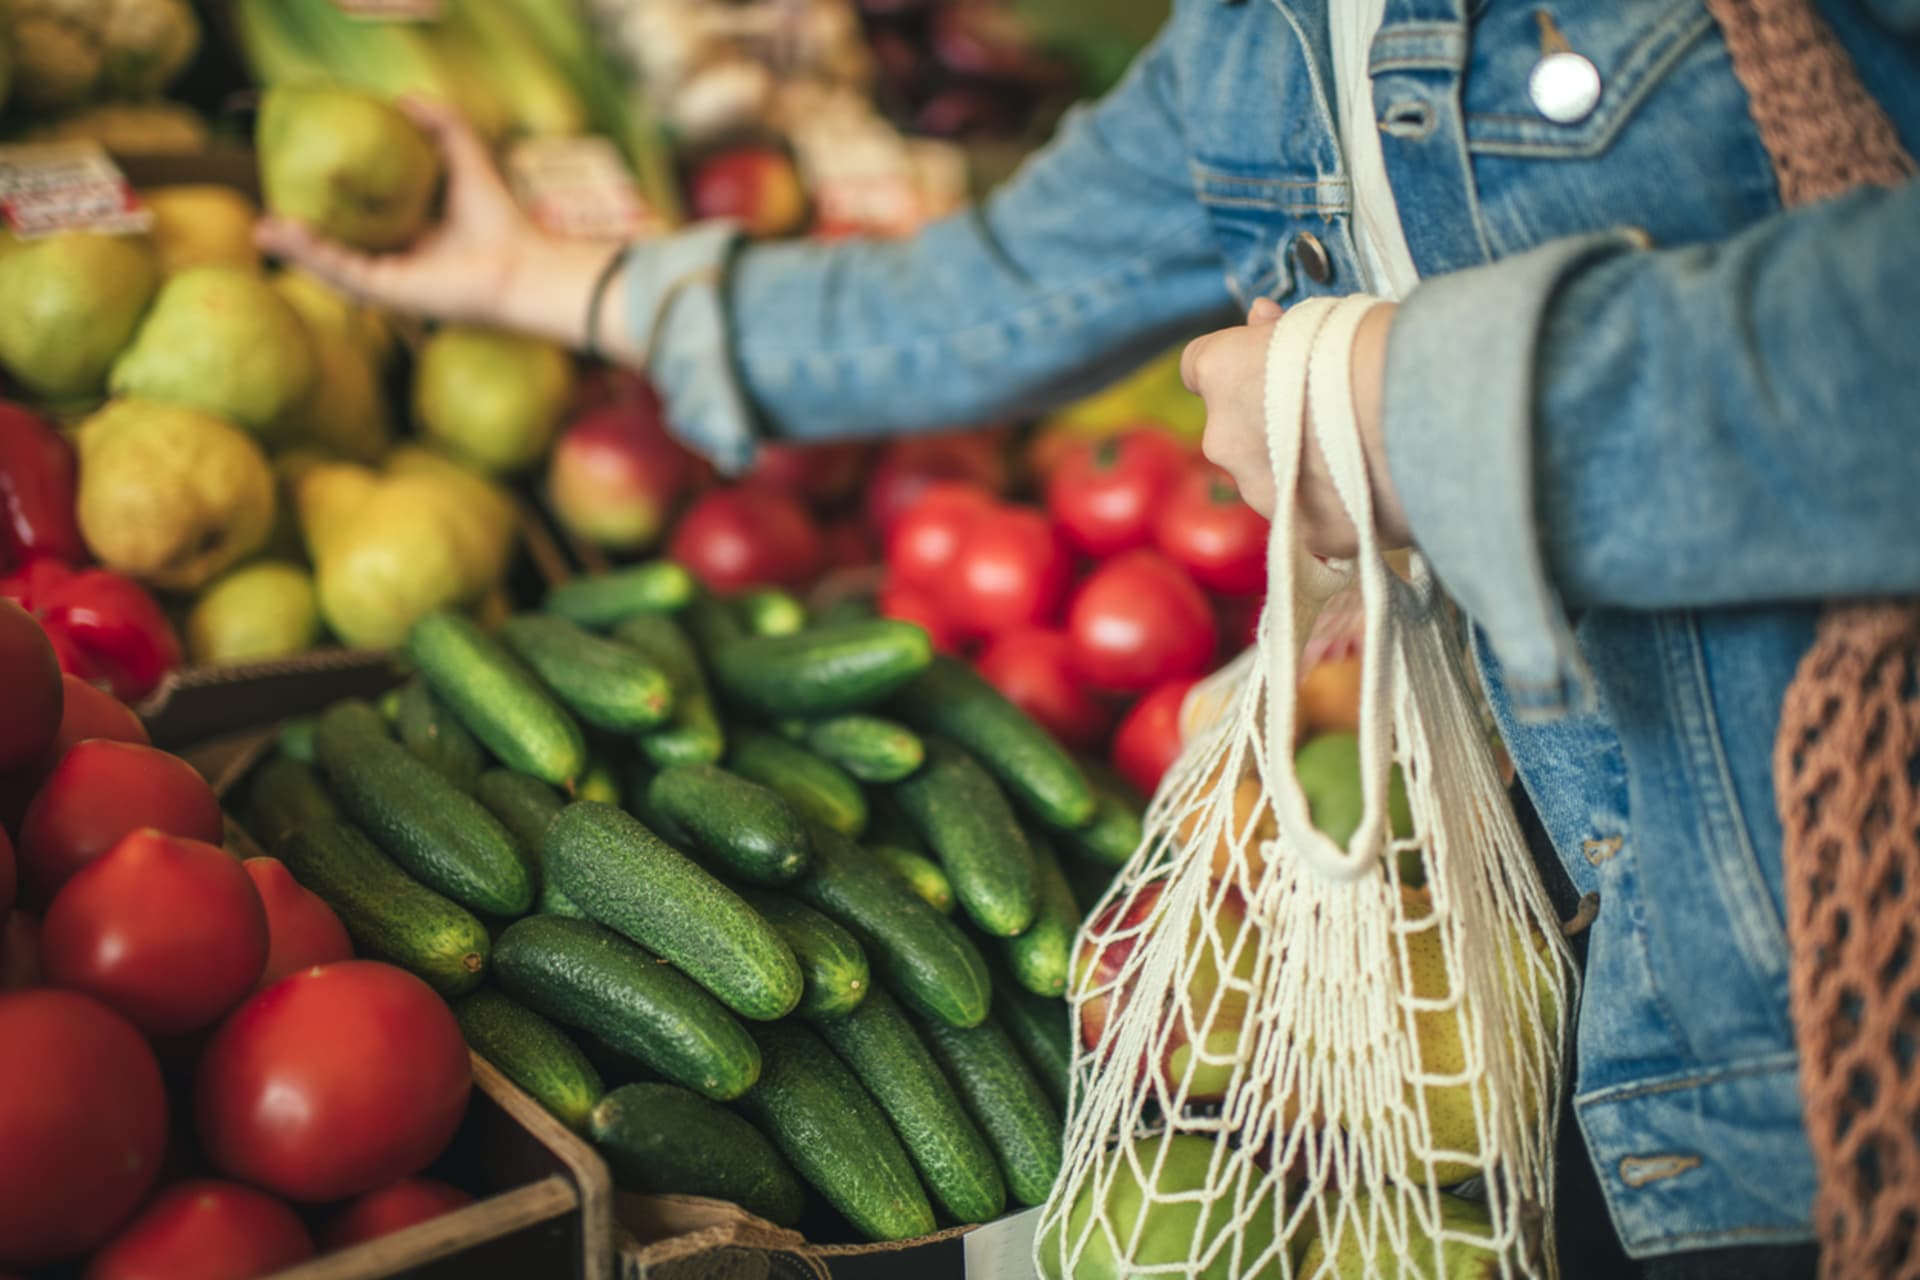 Vyšší inflace se může promítnout na vyšších cenách potravin, varuje ekonom